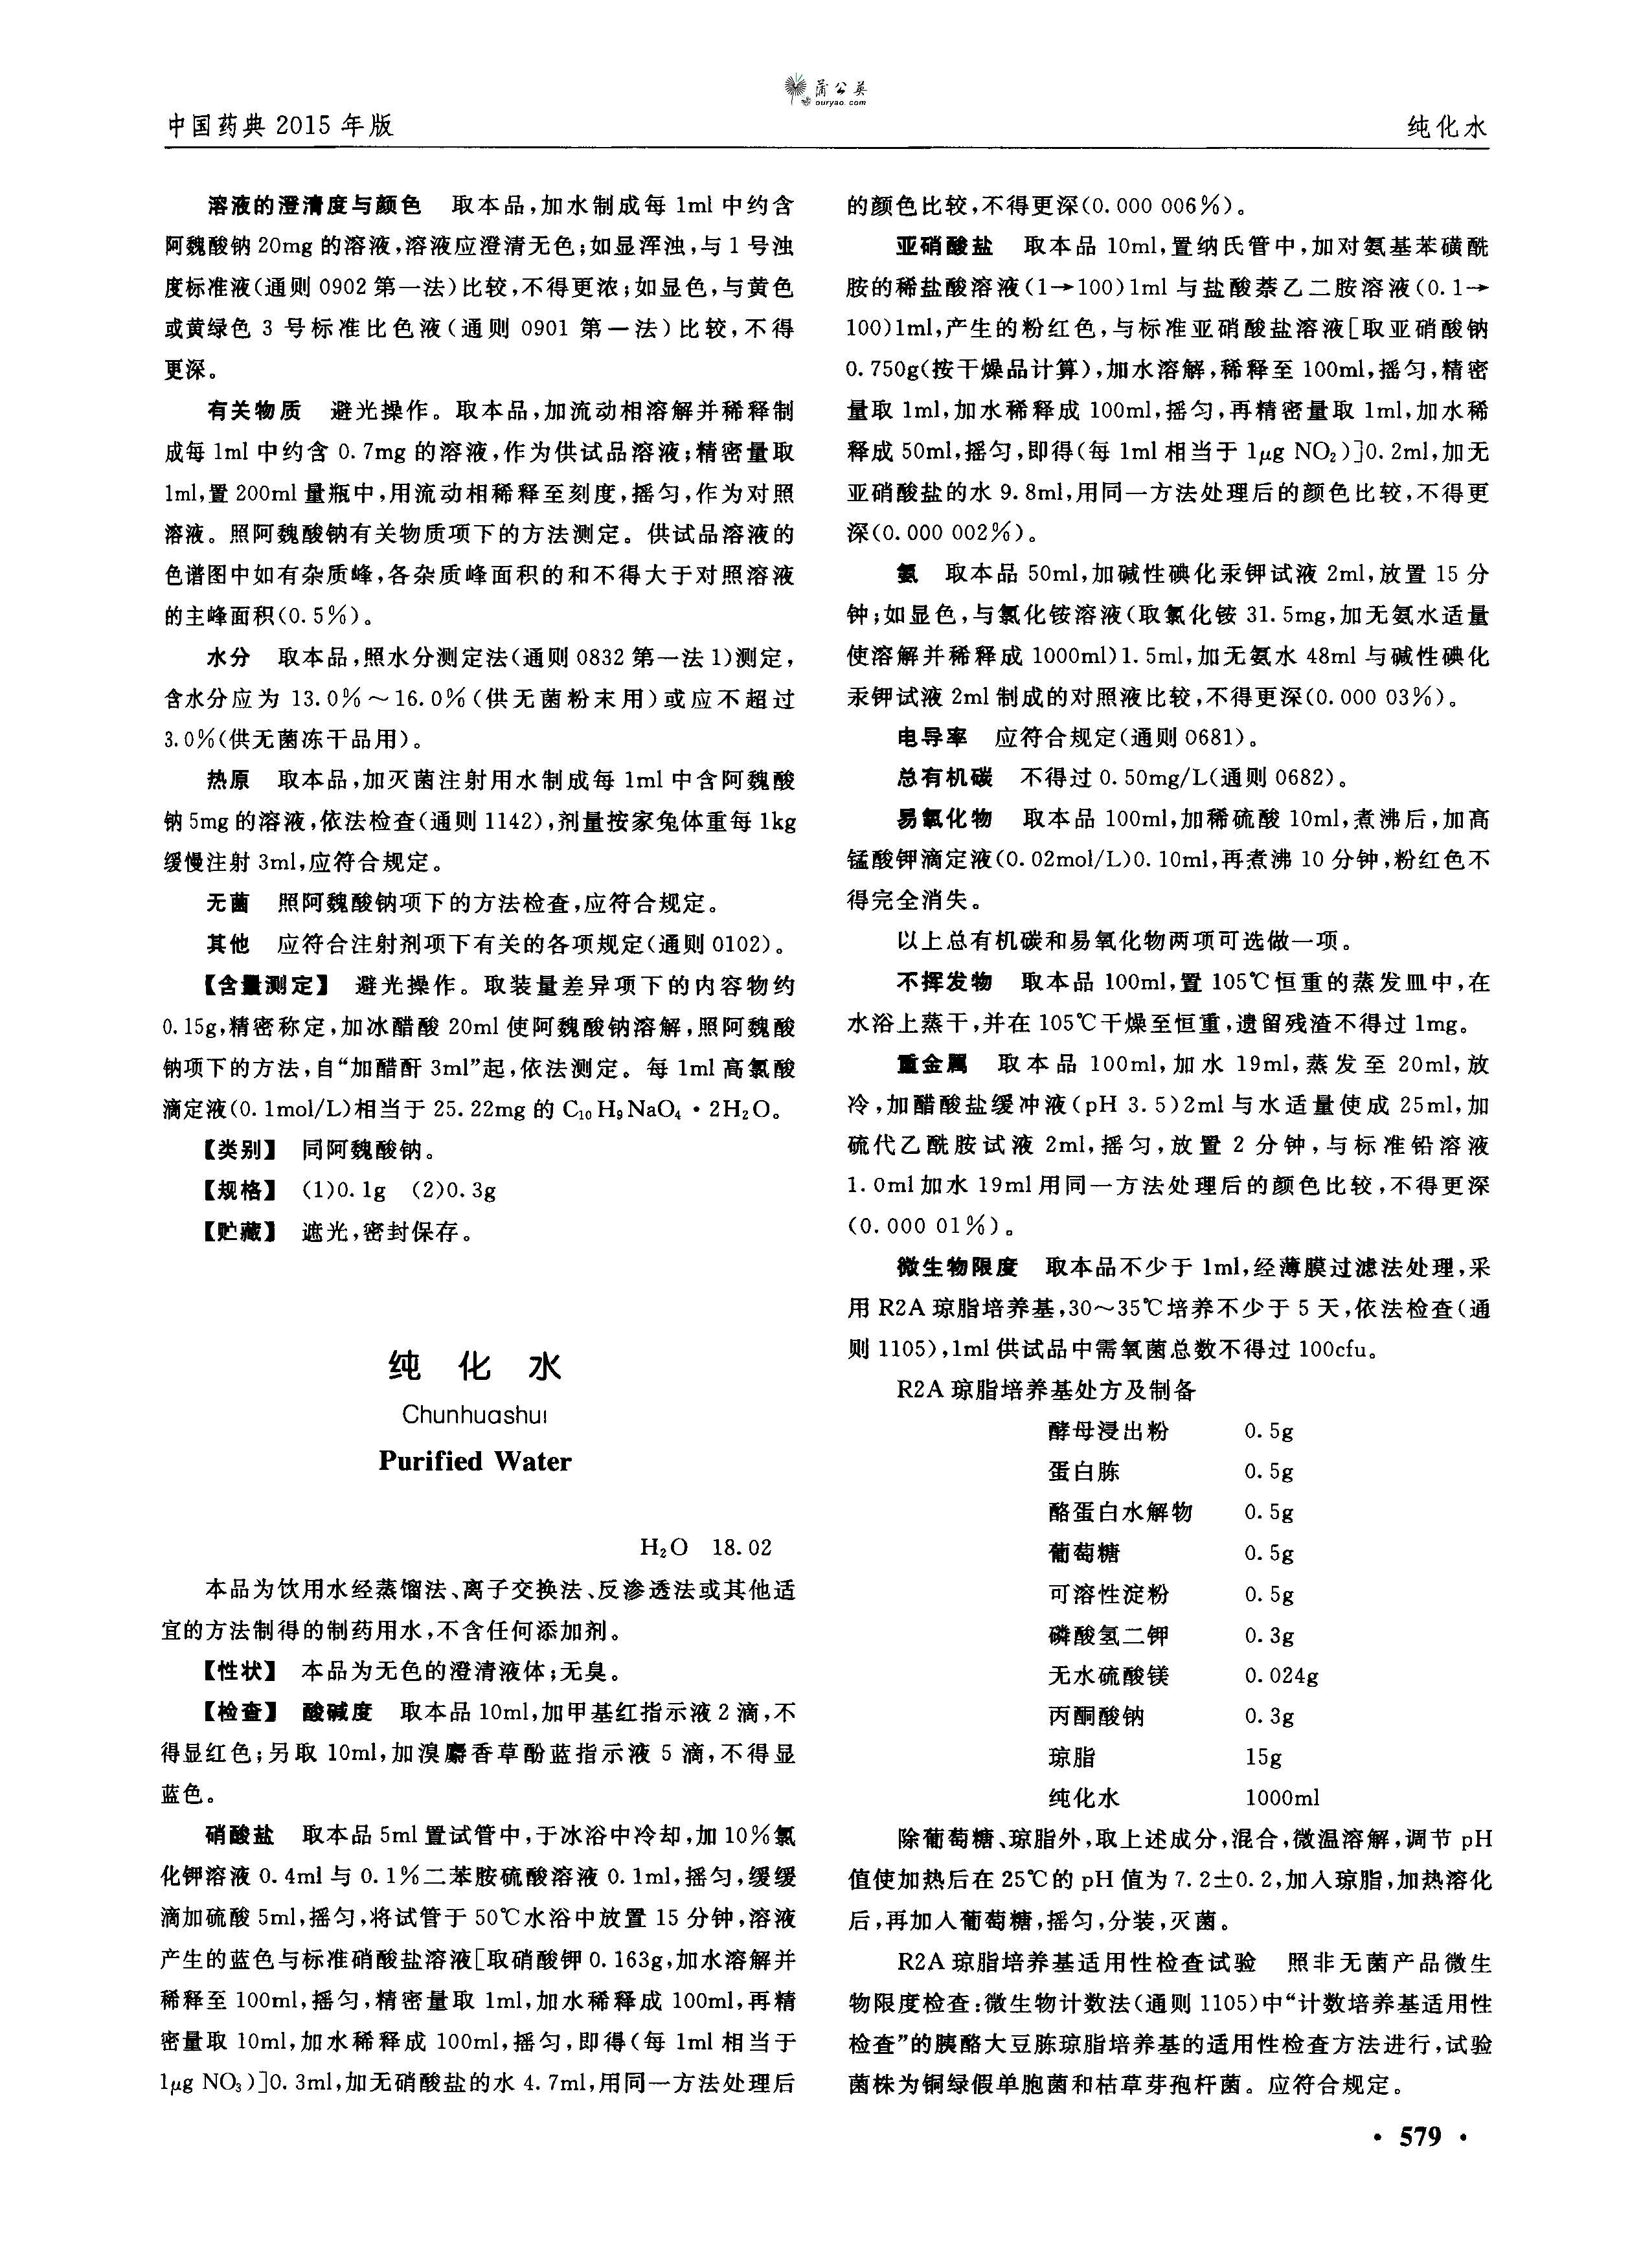 中国药典2015版第二部--纯化水.jpg